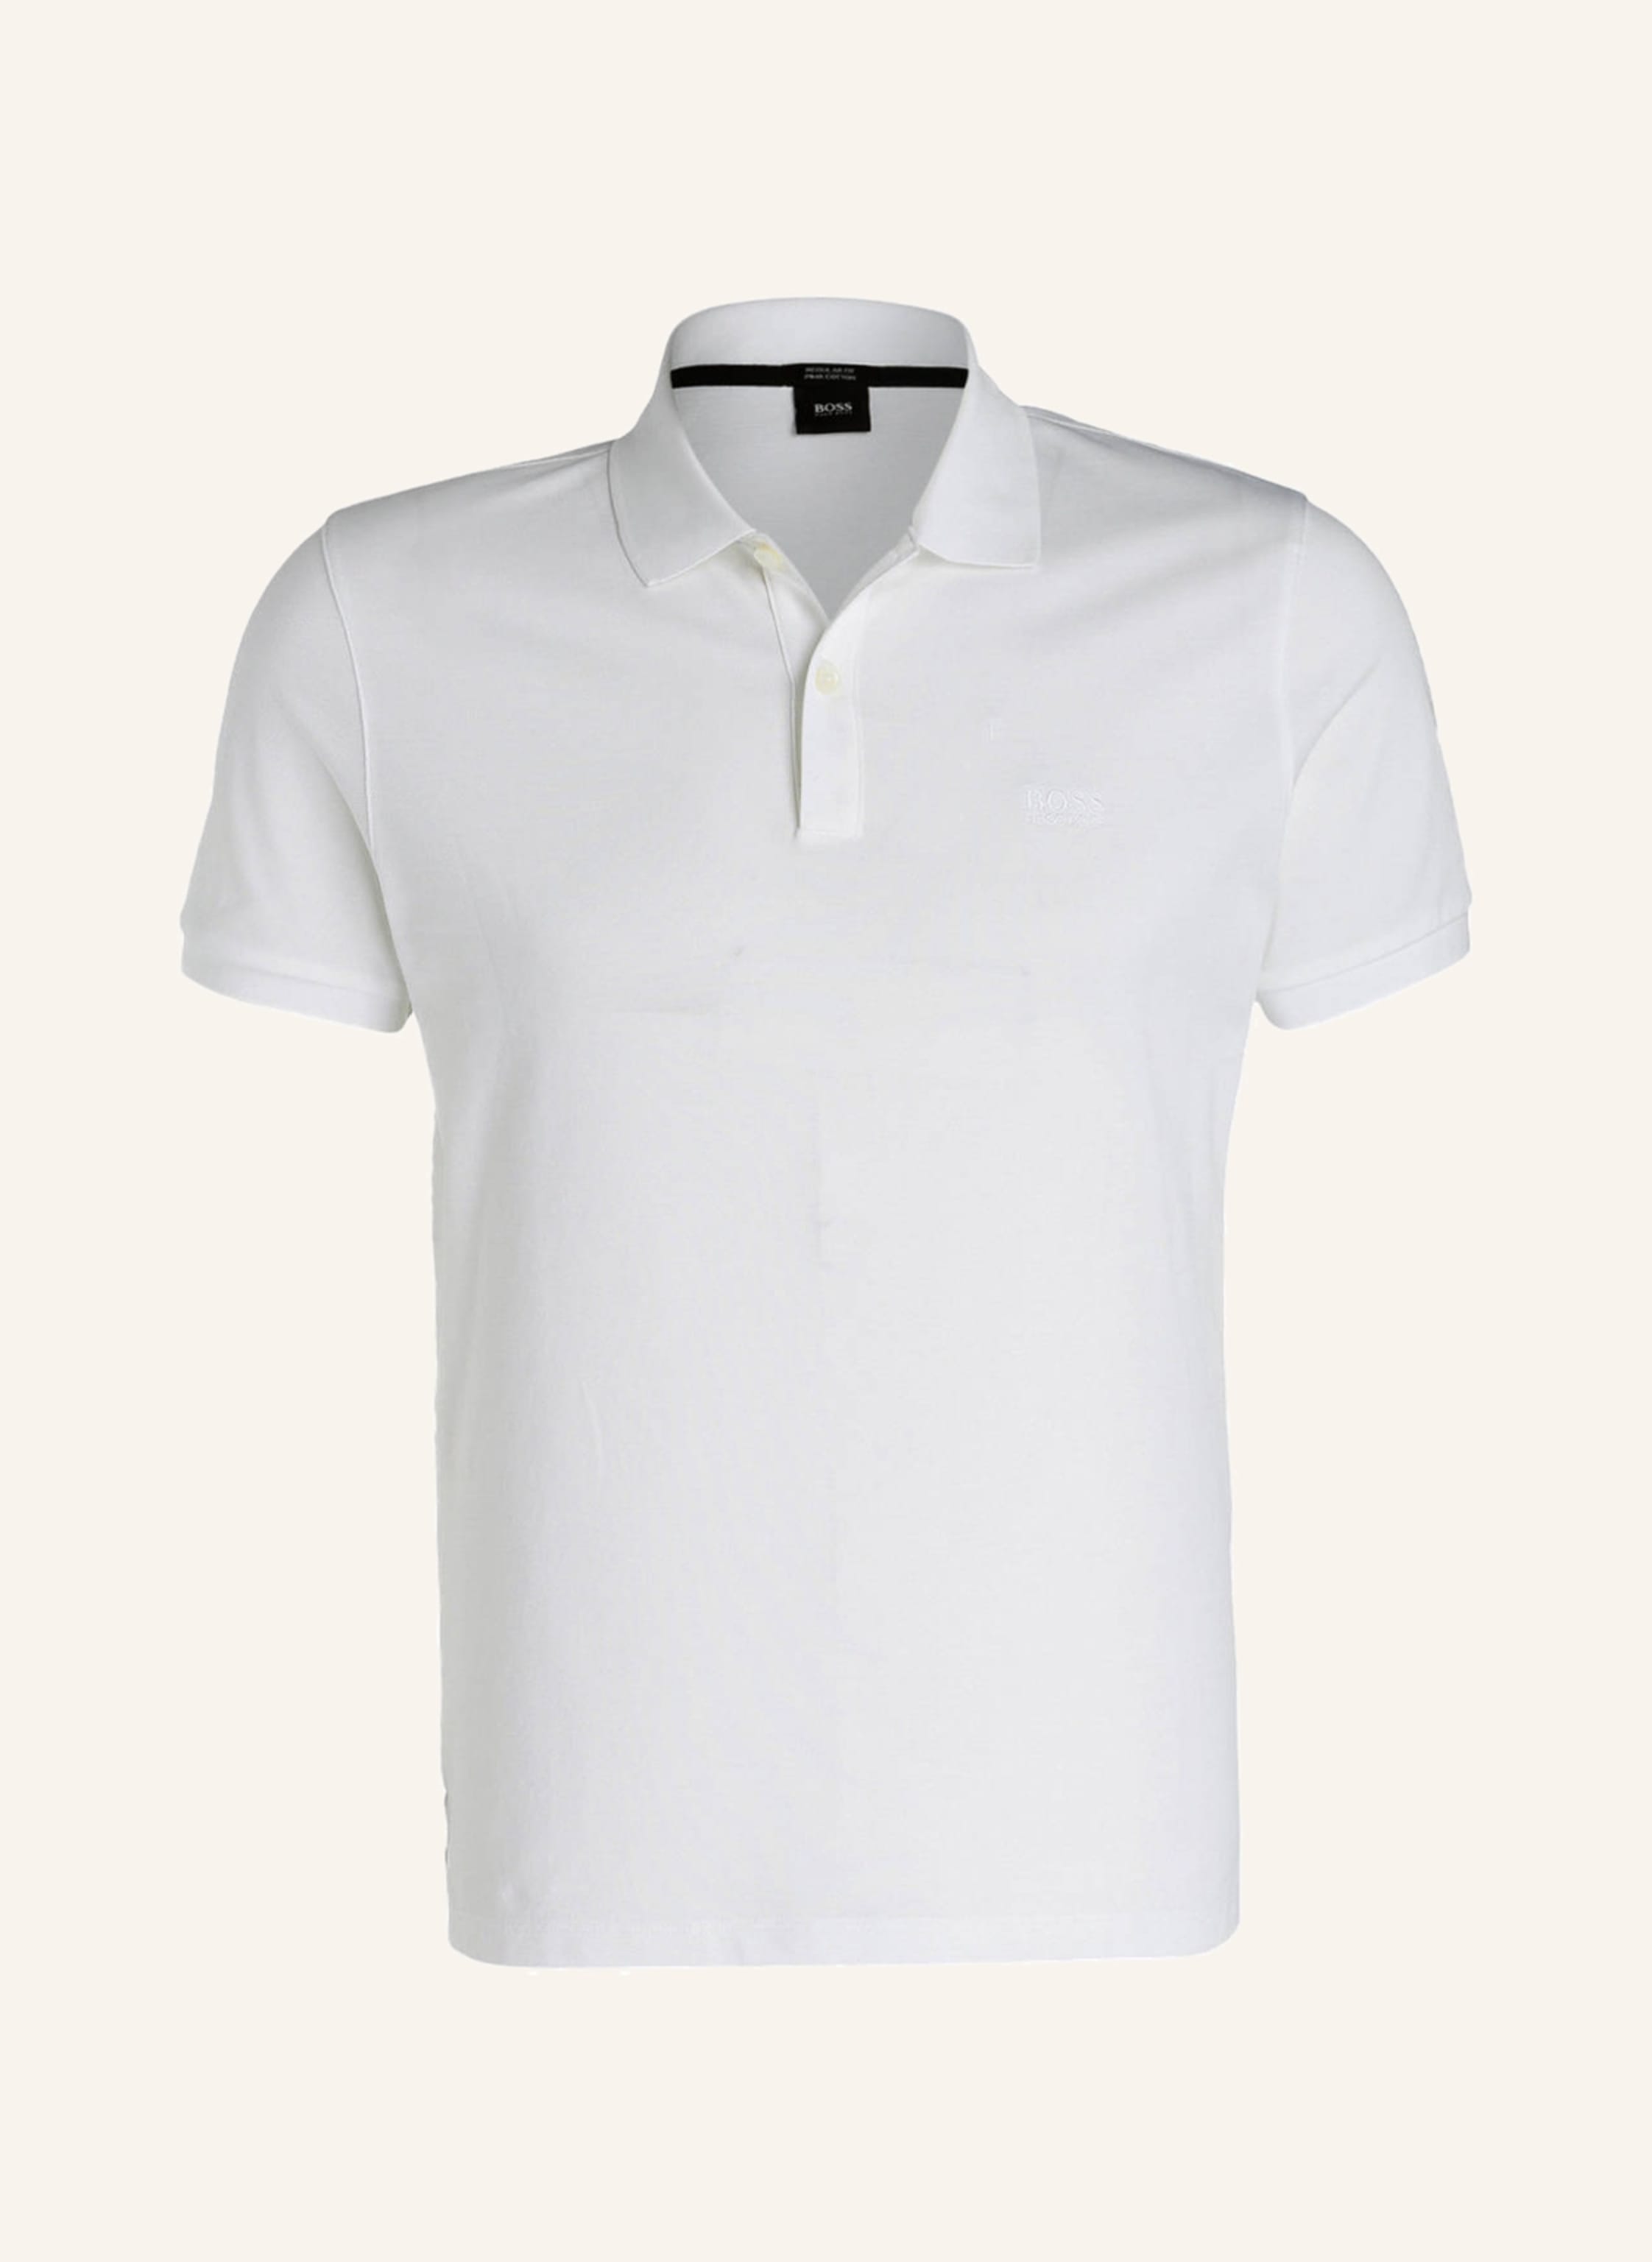 Herren Bekleidung T-Shirts Poloshirts BOSS by HUGO BOSS Polo-shirt Pallas 10108581 01 in Weiß für Herren 